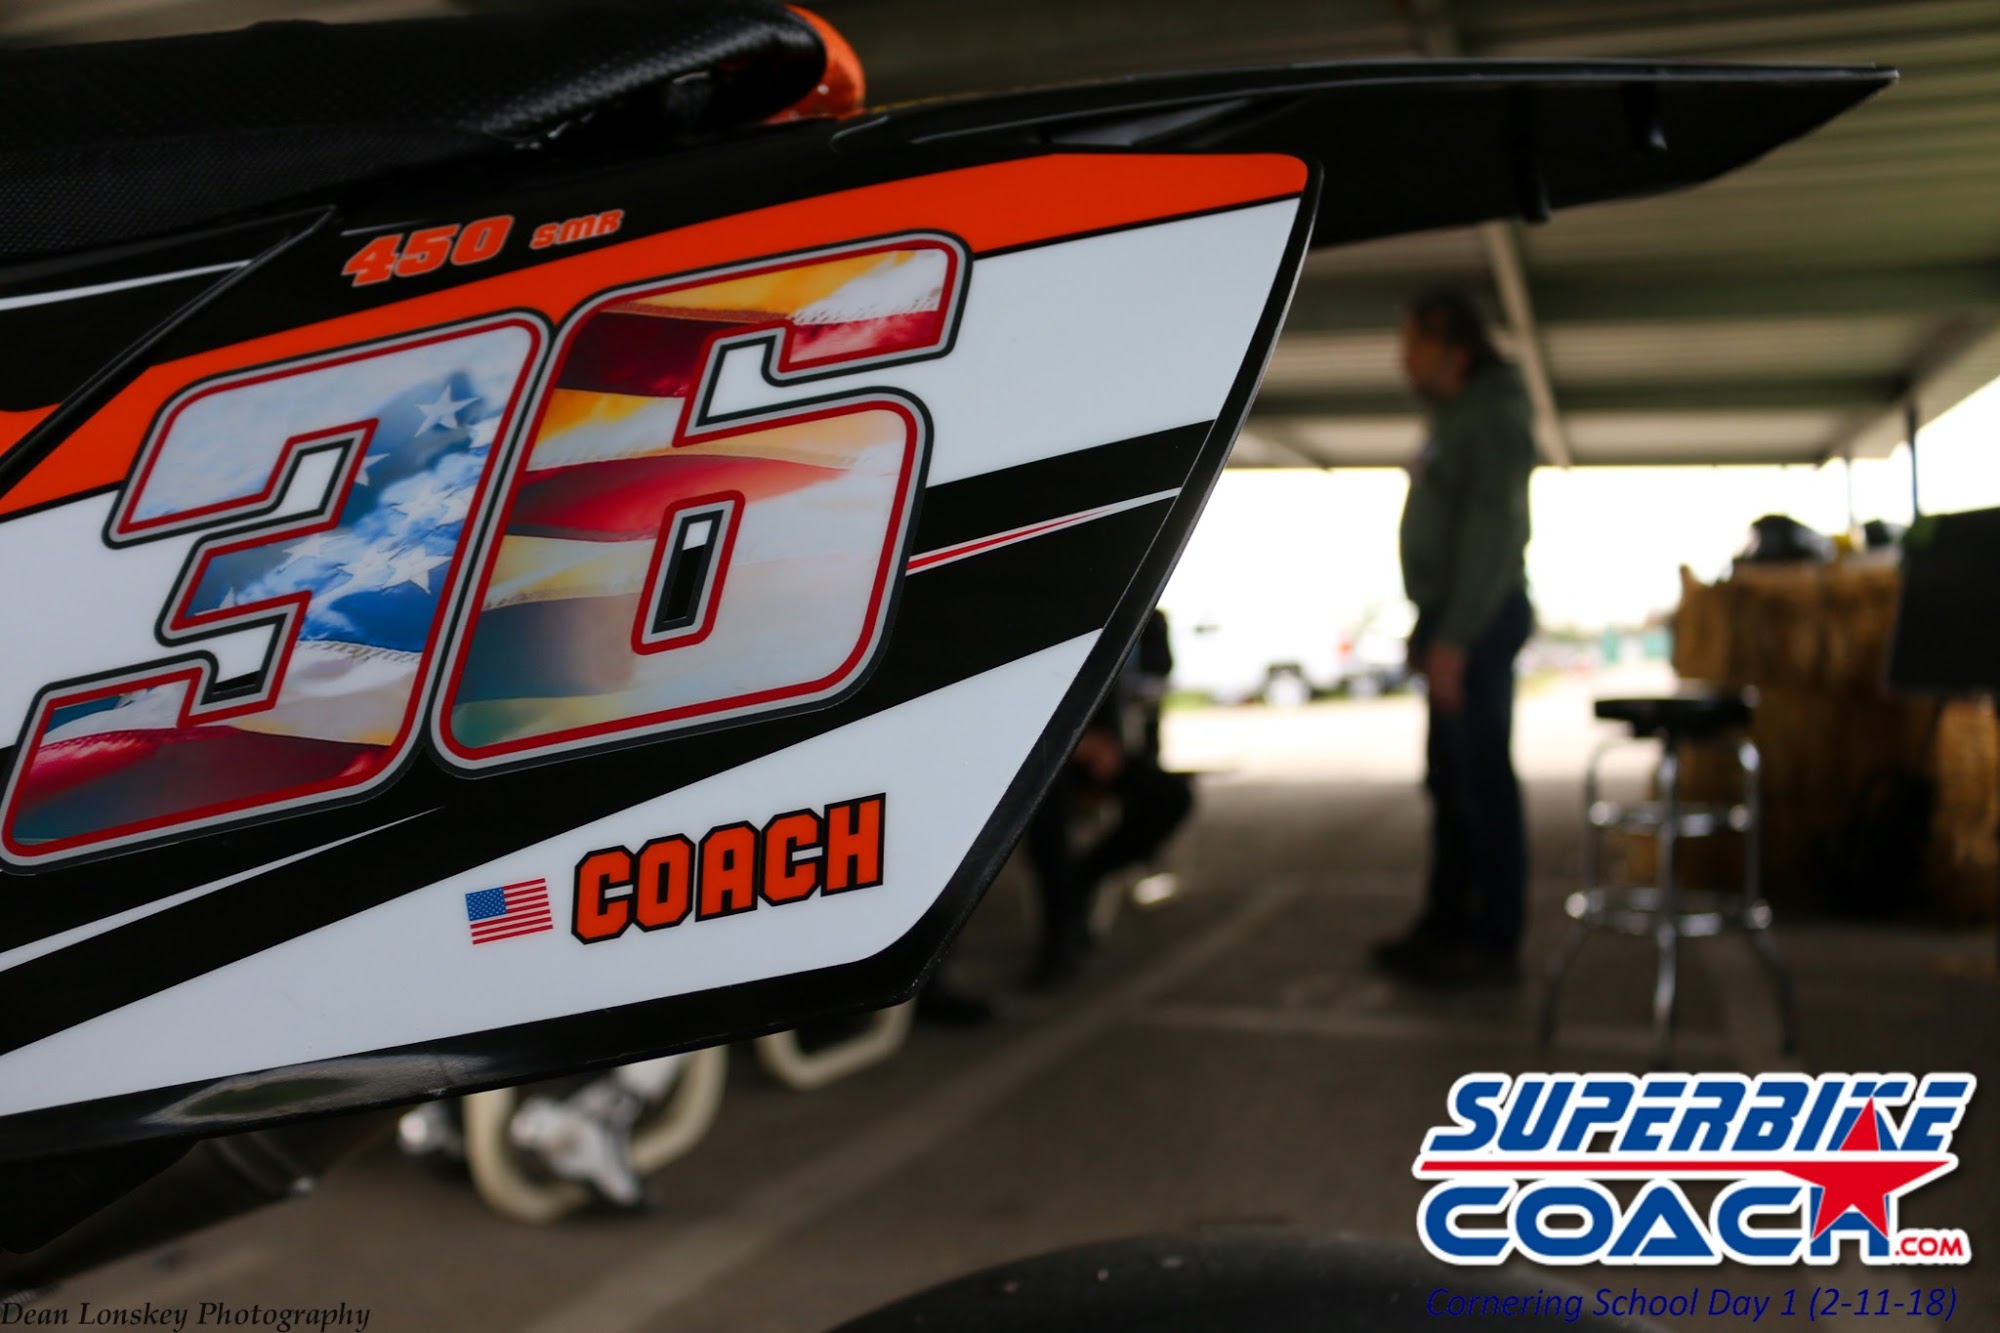 Superbike-Coach Corp.